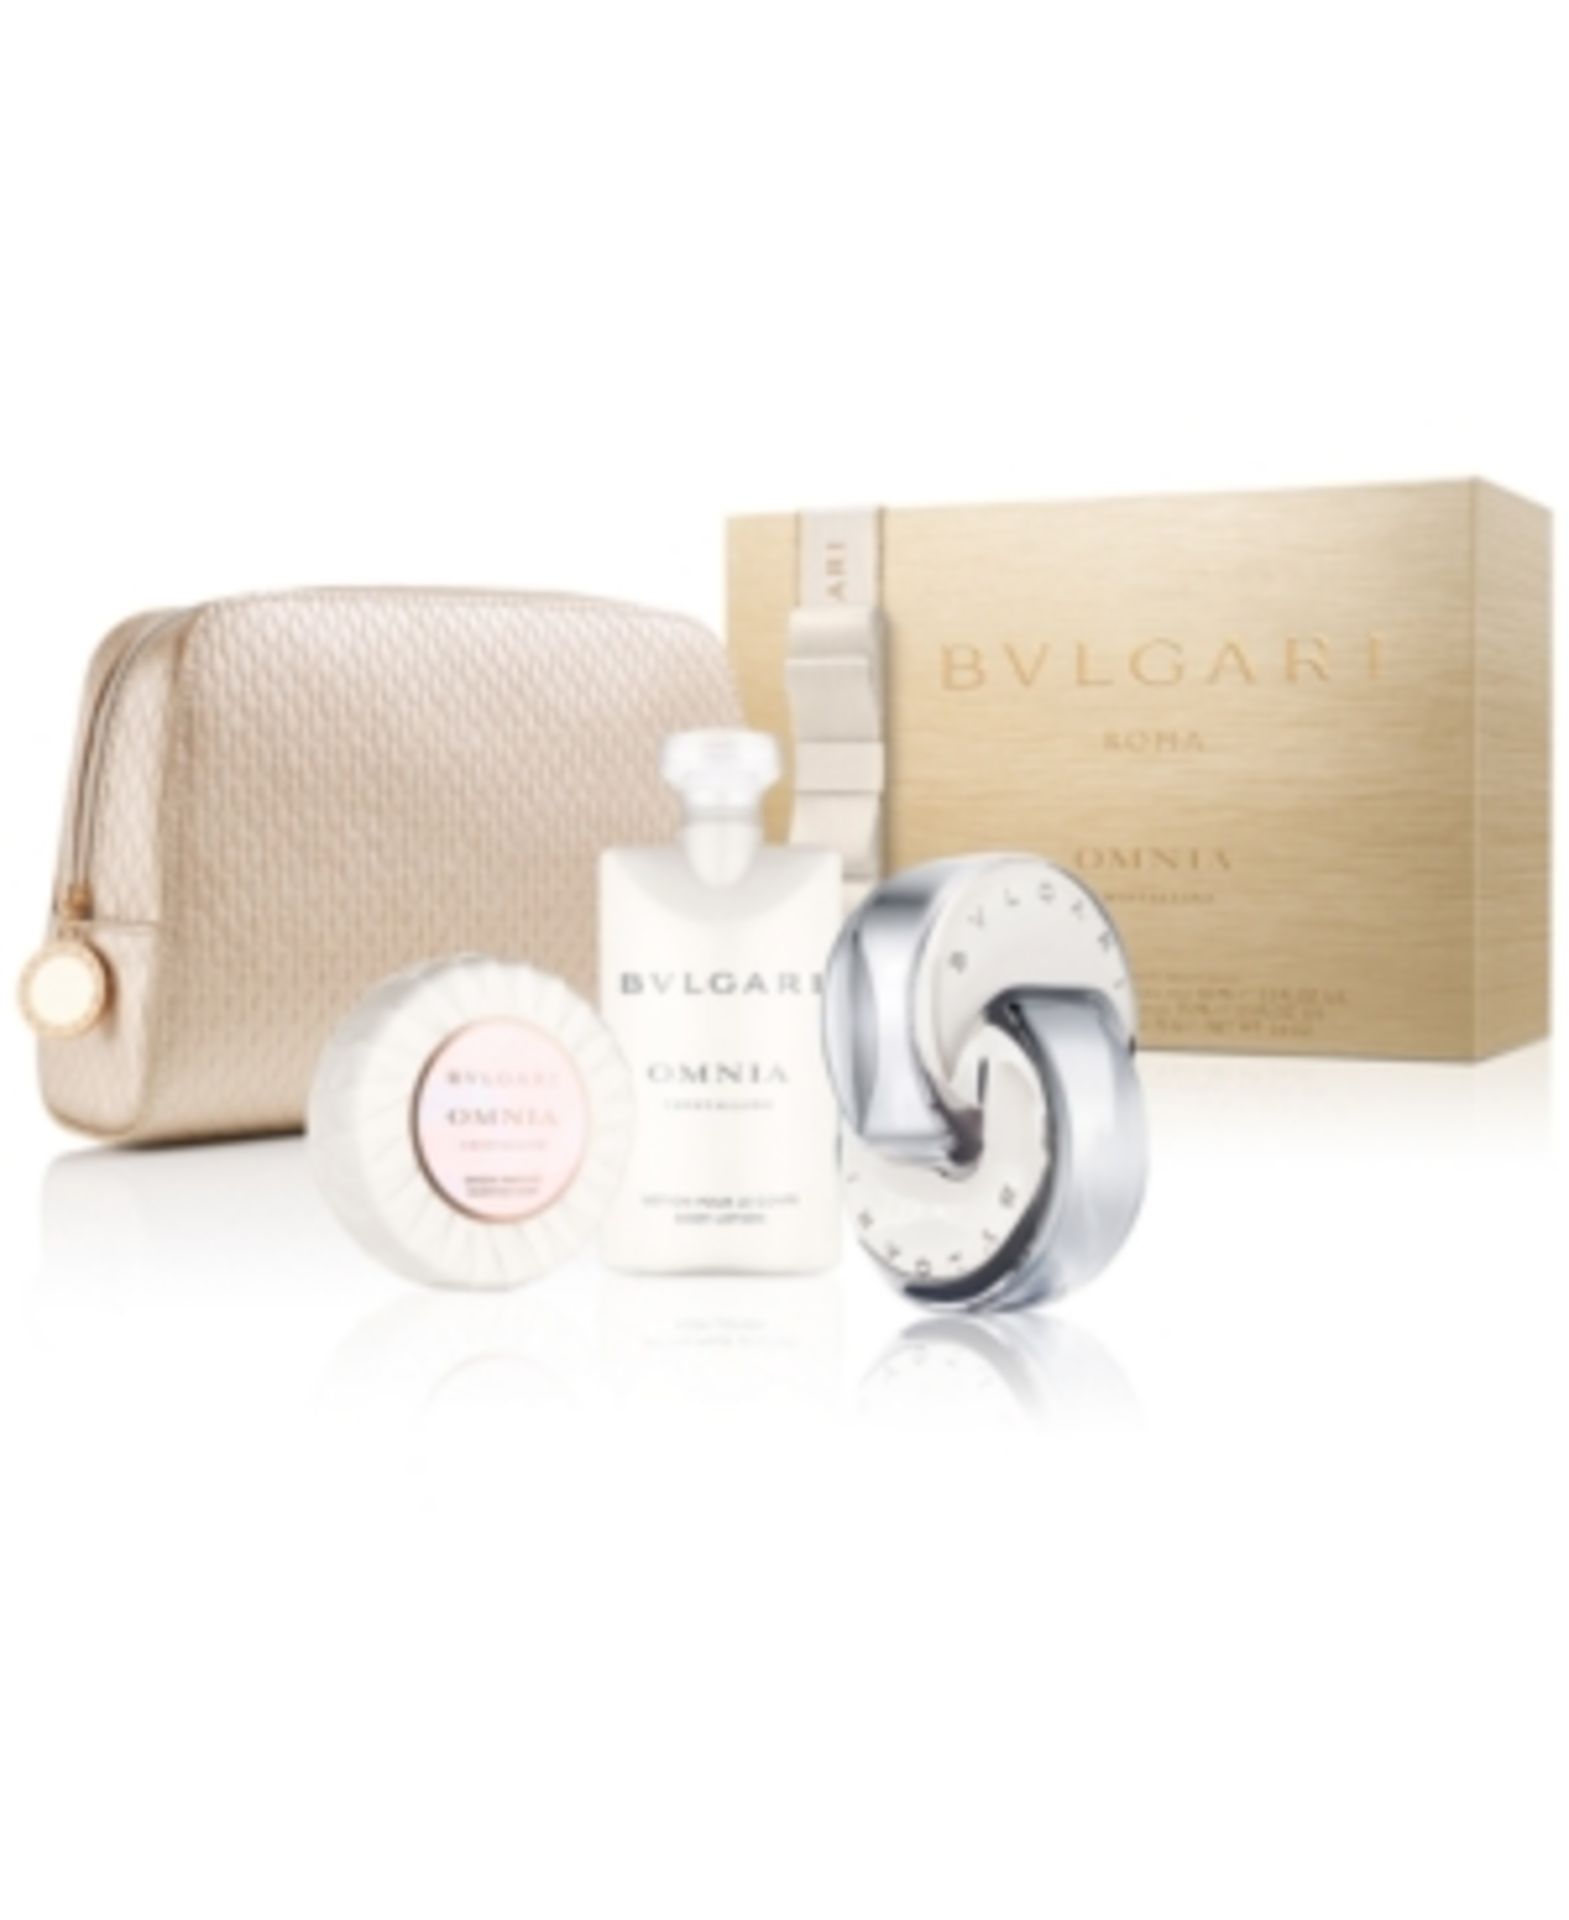 V Brand New Bvlgari Omnia Chrystalline Gift Set Including Beauty Pouch EDT Spray (65ml) Body